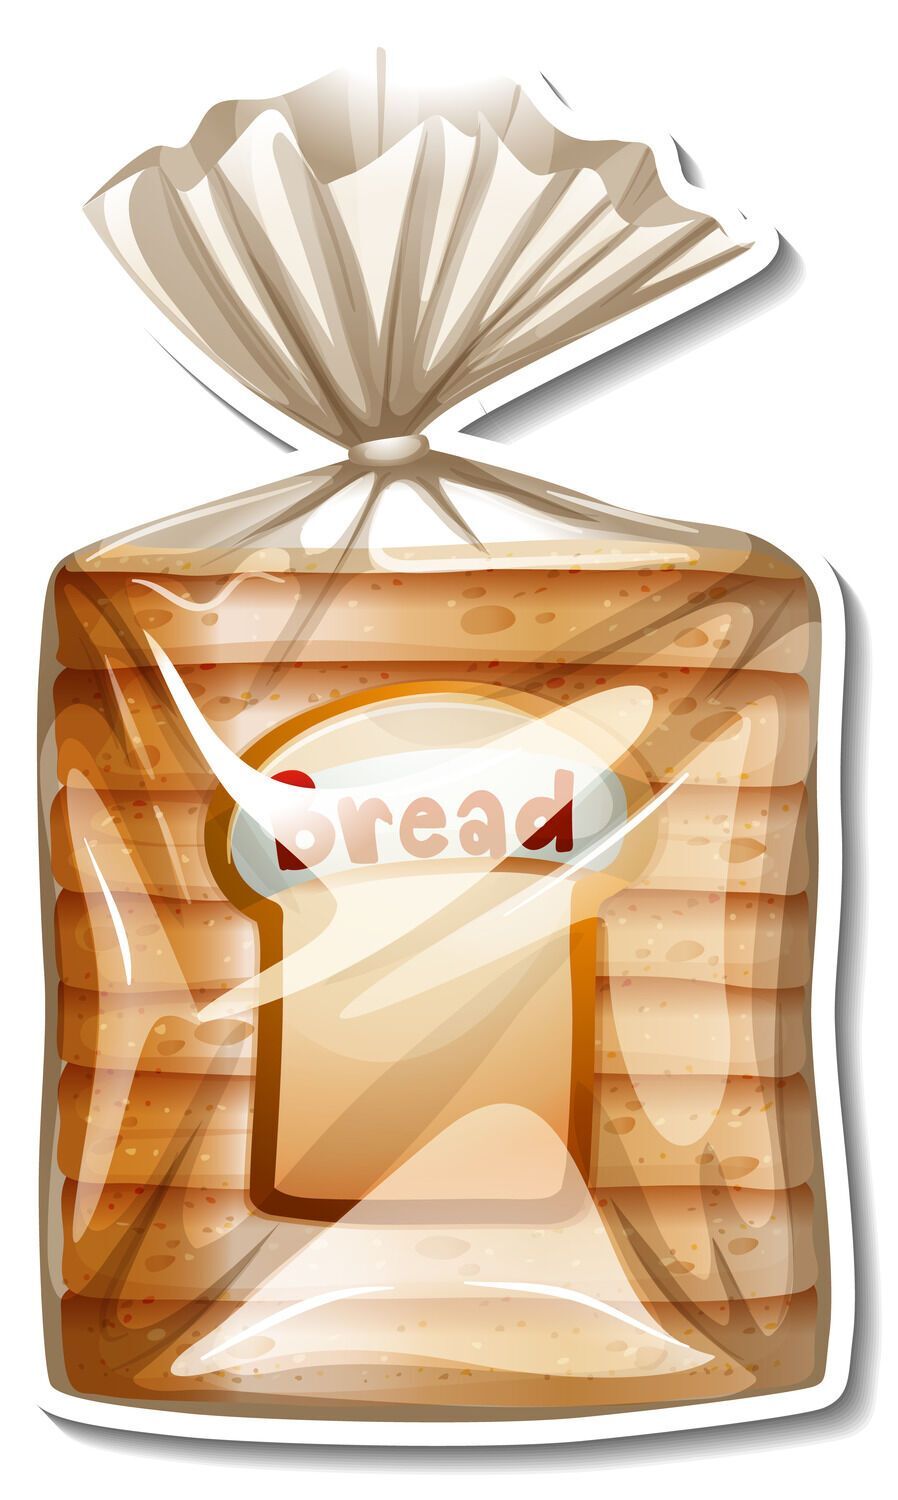 Лайфхак от эксперта: простой способ сохранить хлеб свежим в течение нескольких месяцев